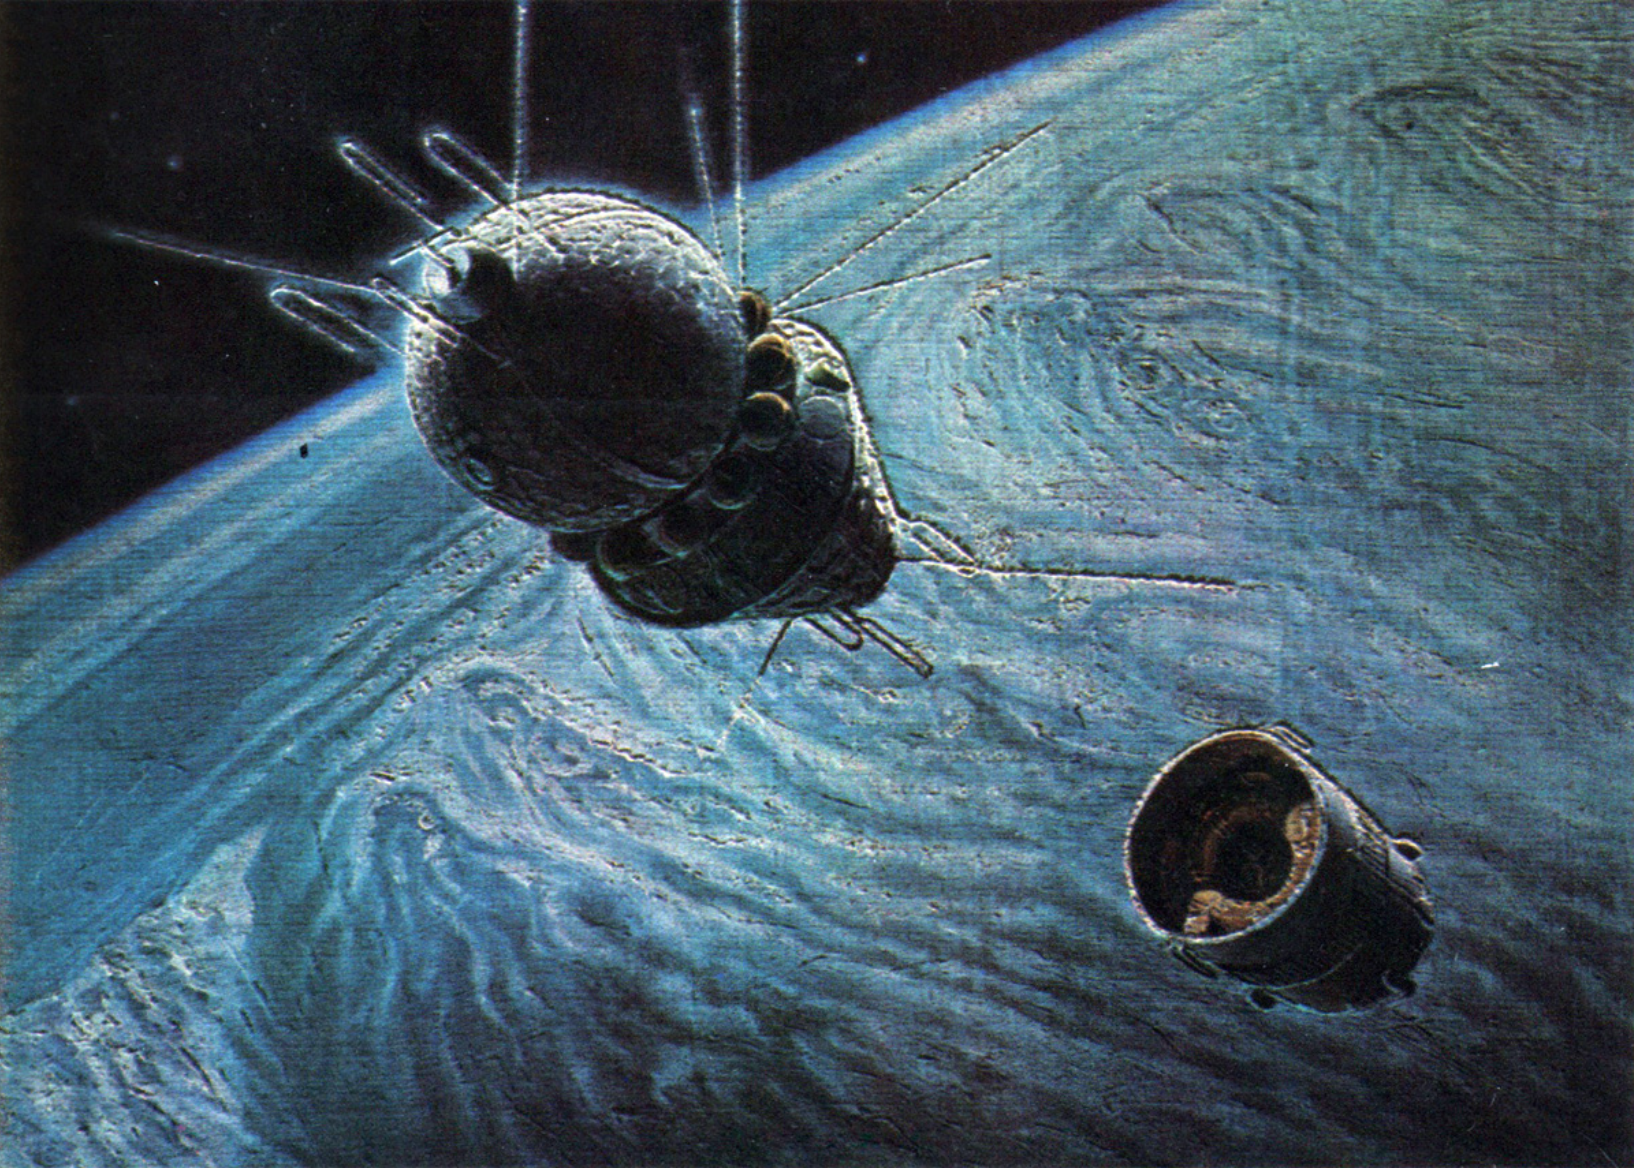 Первый межпланетный полет. Космический корабль Гагарина Восток 1. А.Леонов, а.Соколов "на спутнике Юпитера". Космический корабль Восток картина Леонов.